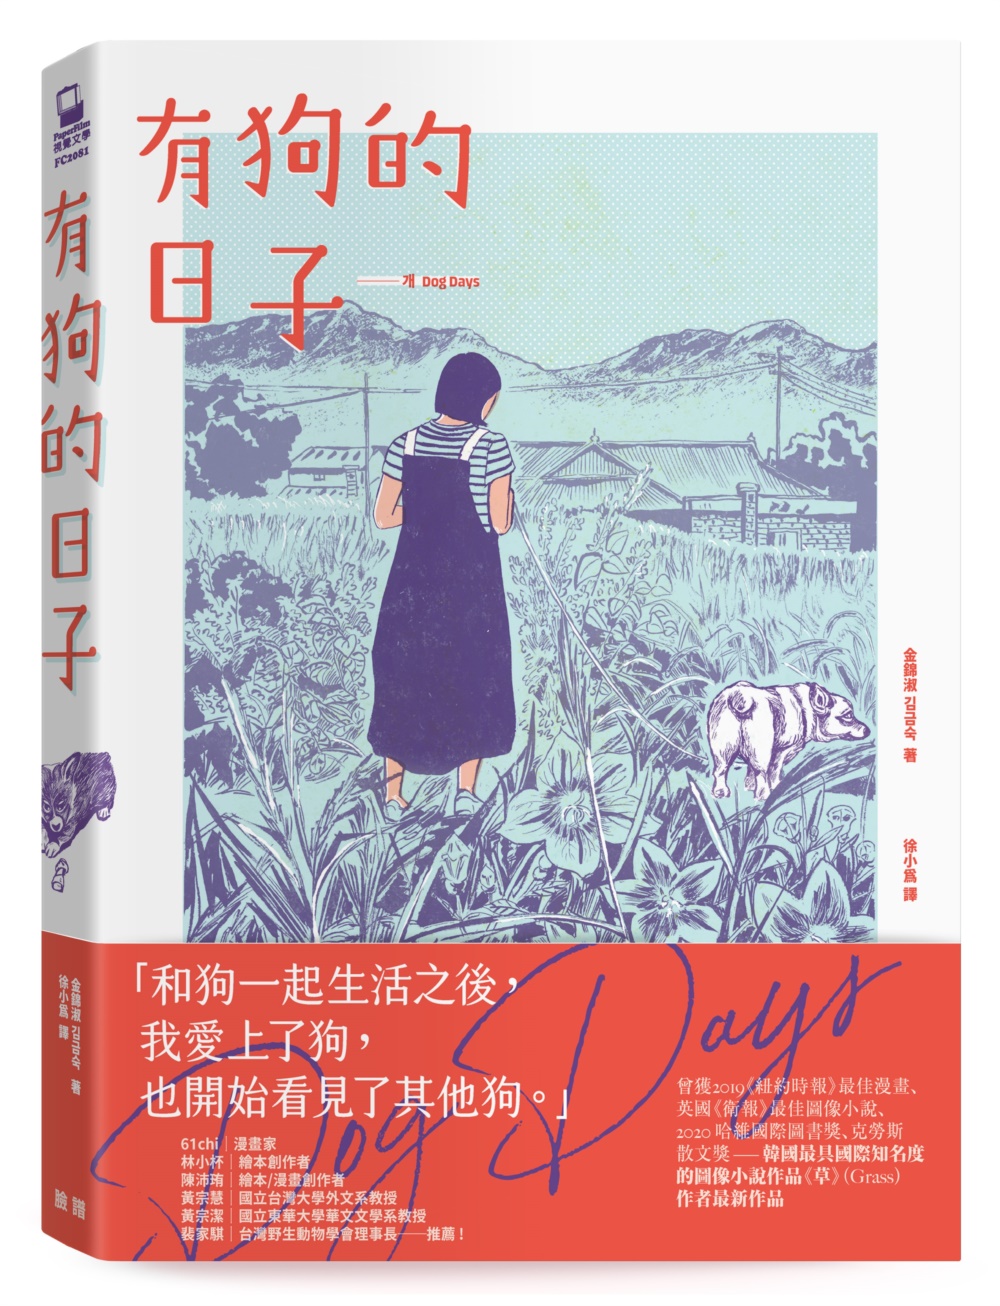 有狗的日子【韓國最具國際知名度的圖像小說作品《草》(Grass)作者最新作品】